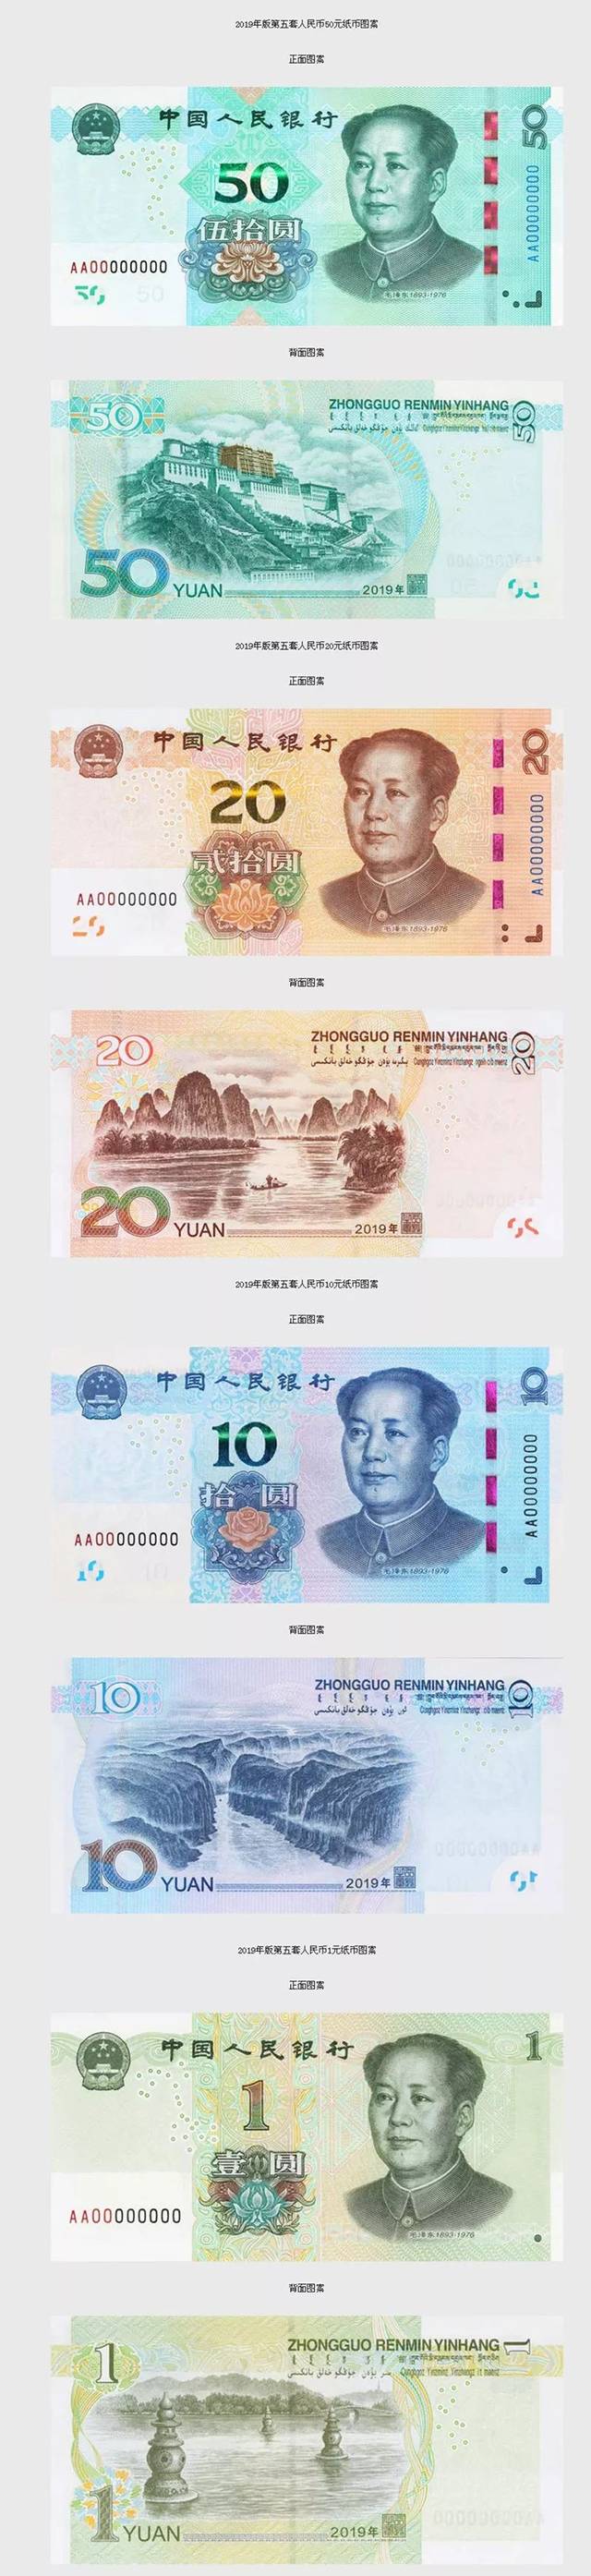 中国人民银行就发行2019年版第五套人民币50元,20元,10元,1元纸币及1